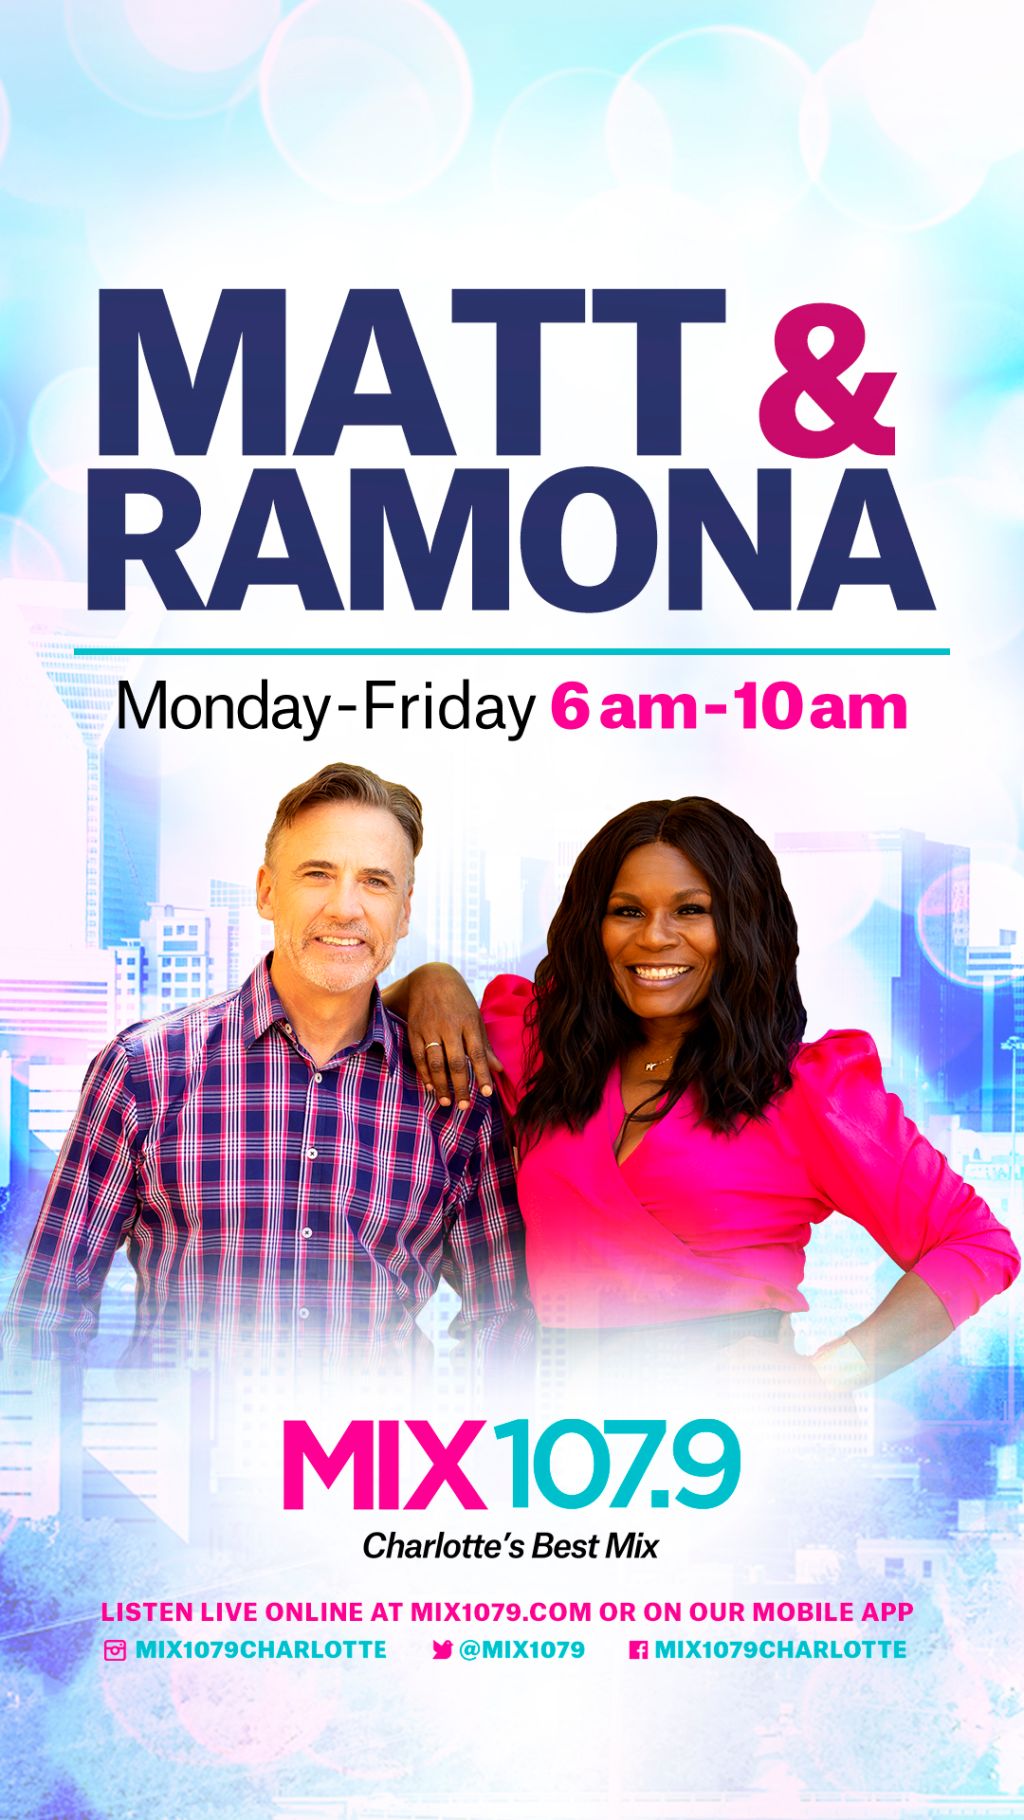 Matt & Ramona Show